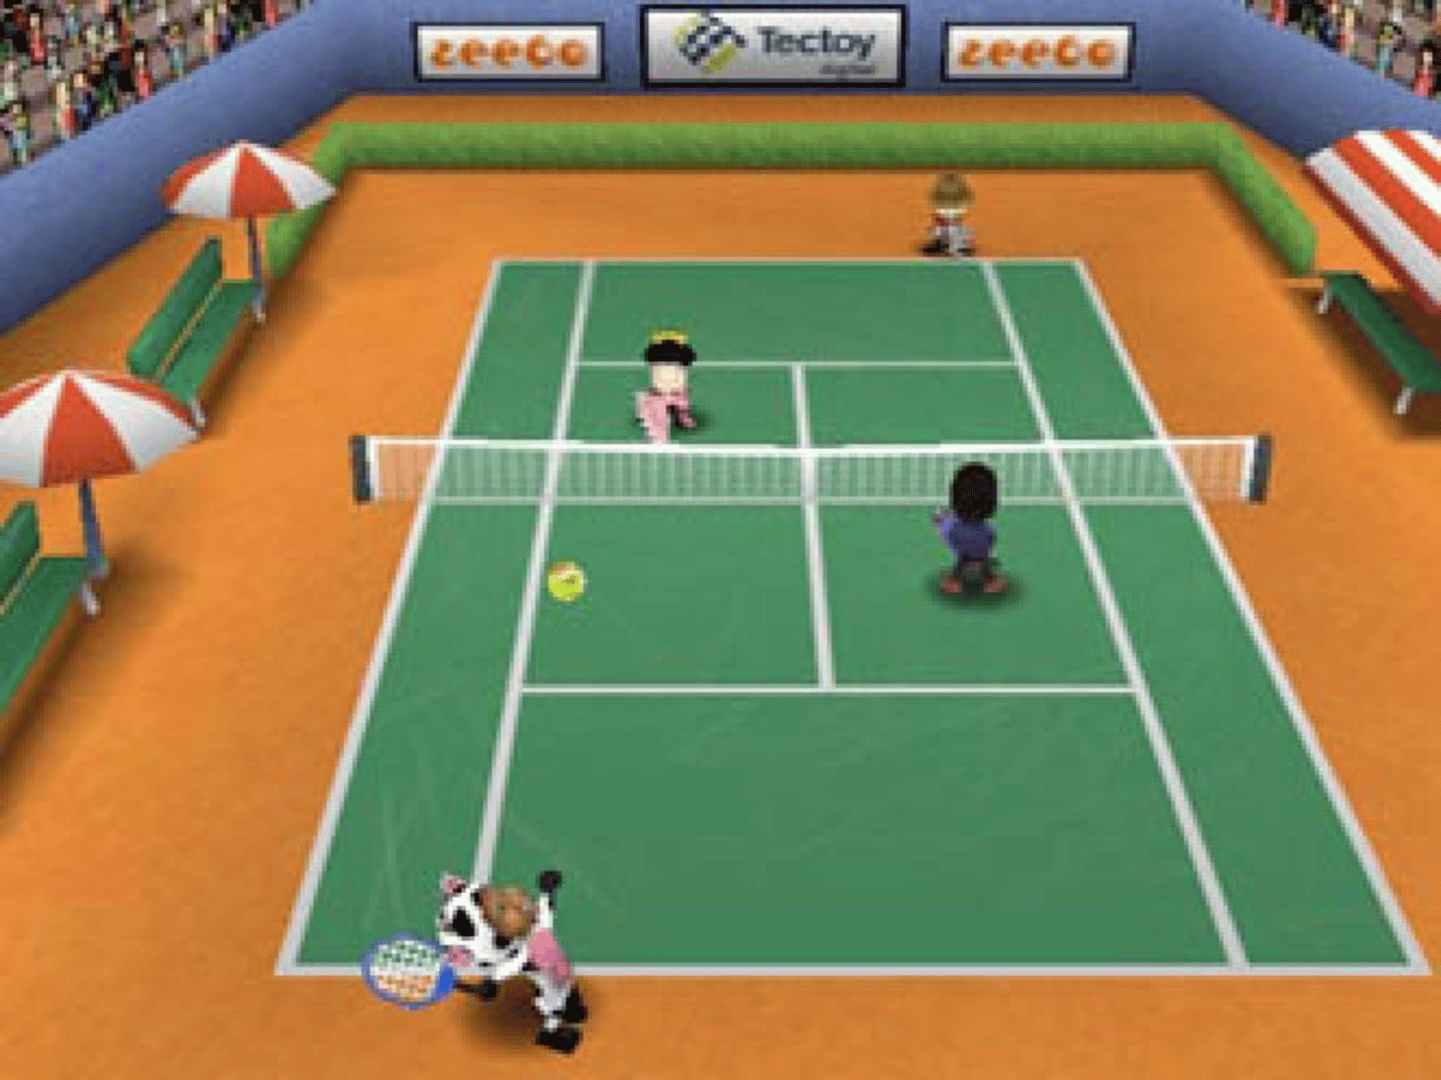 Zeebo Sports Tênis screenshot